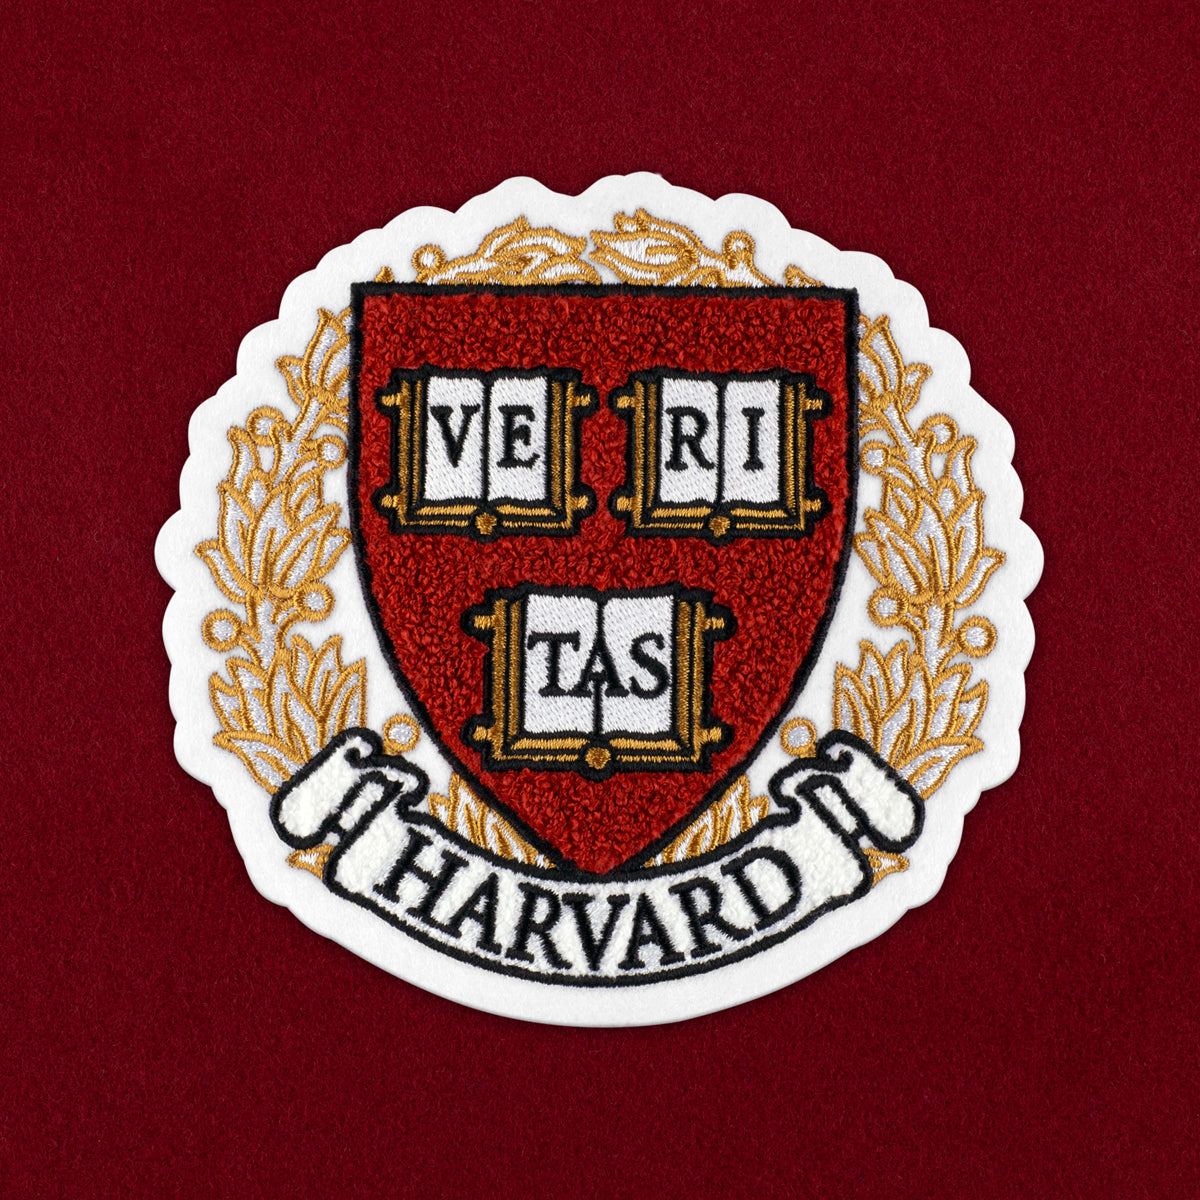 Harvard Crimson "Veritas" Tote Bag